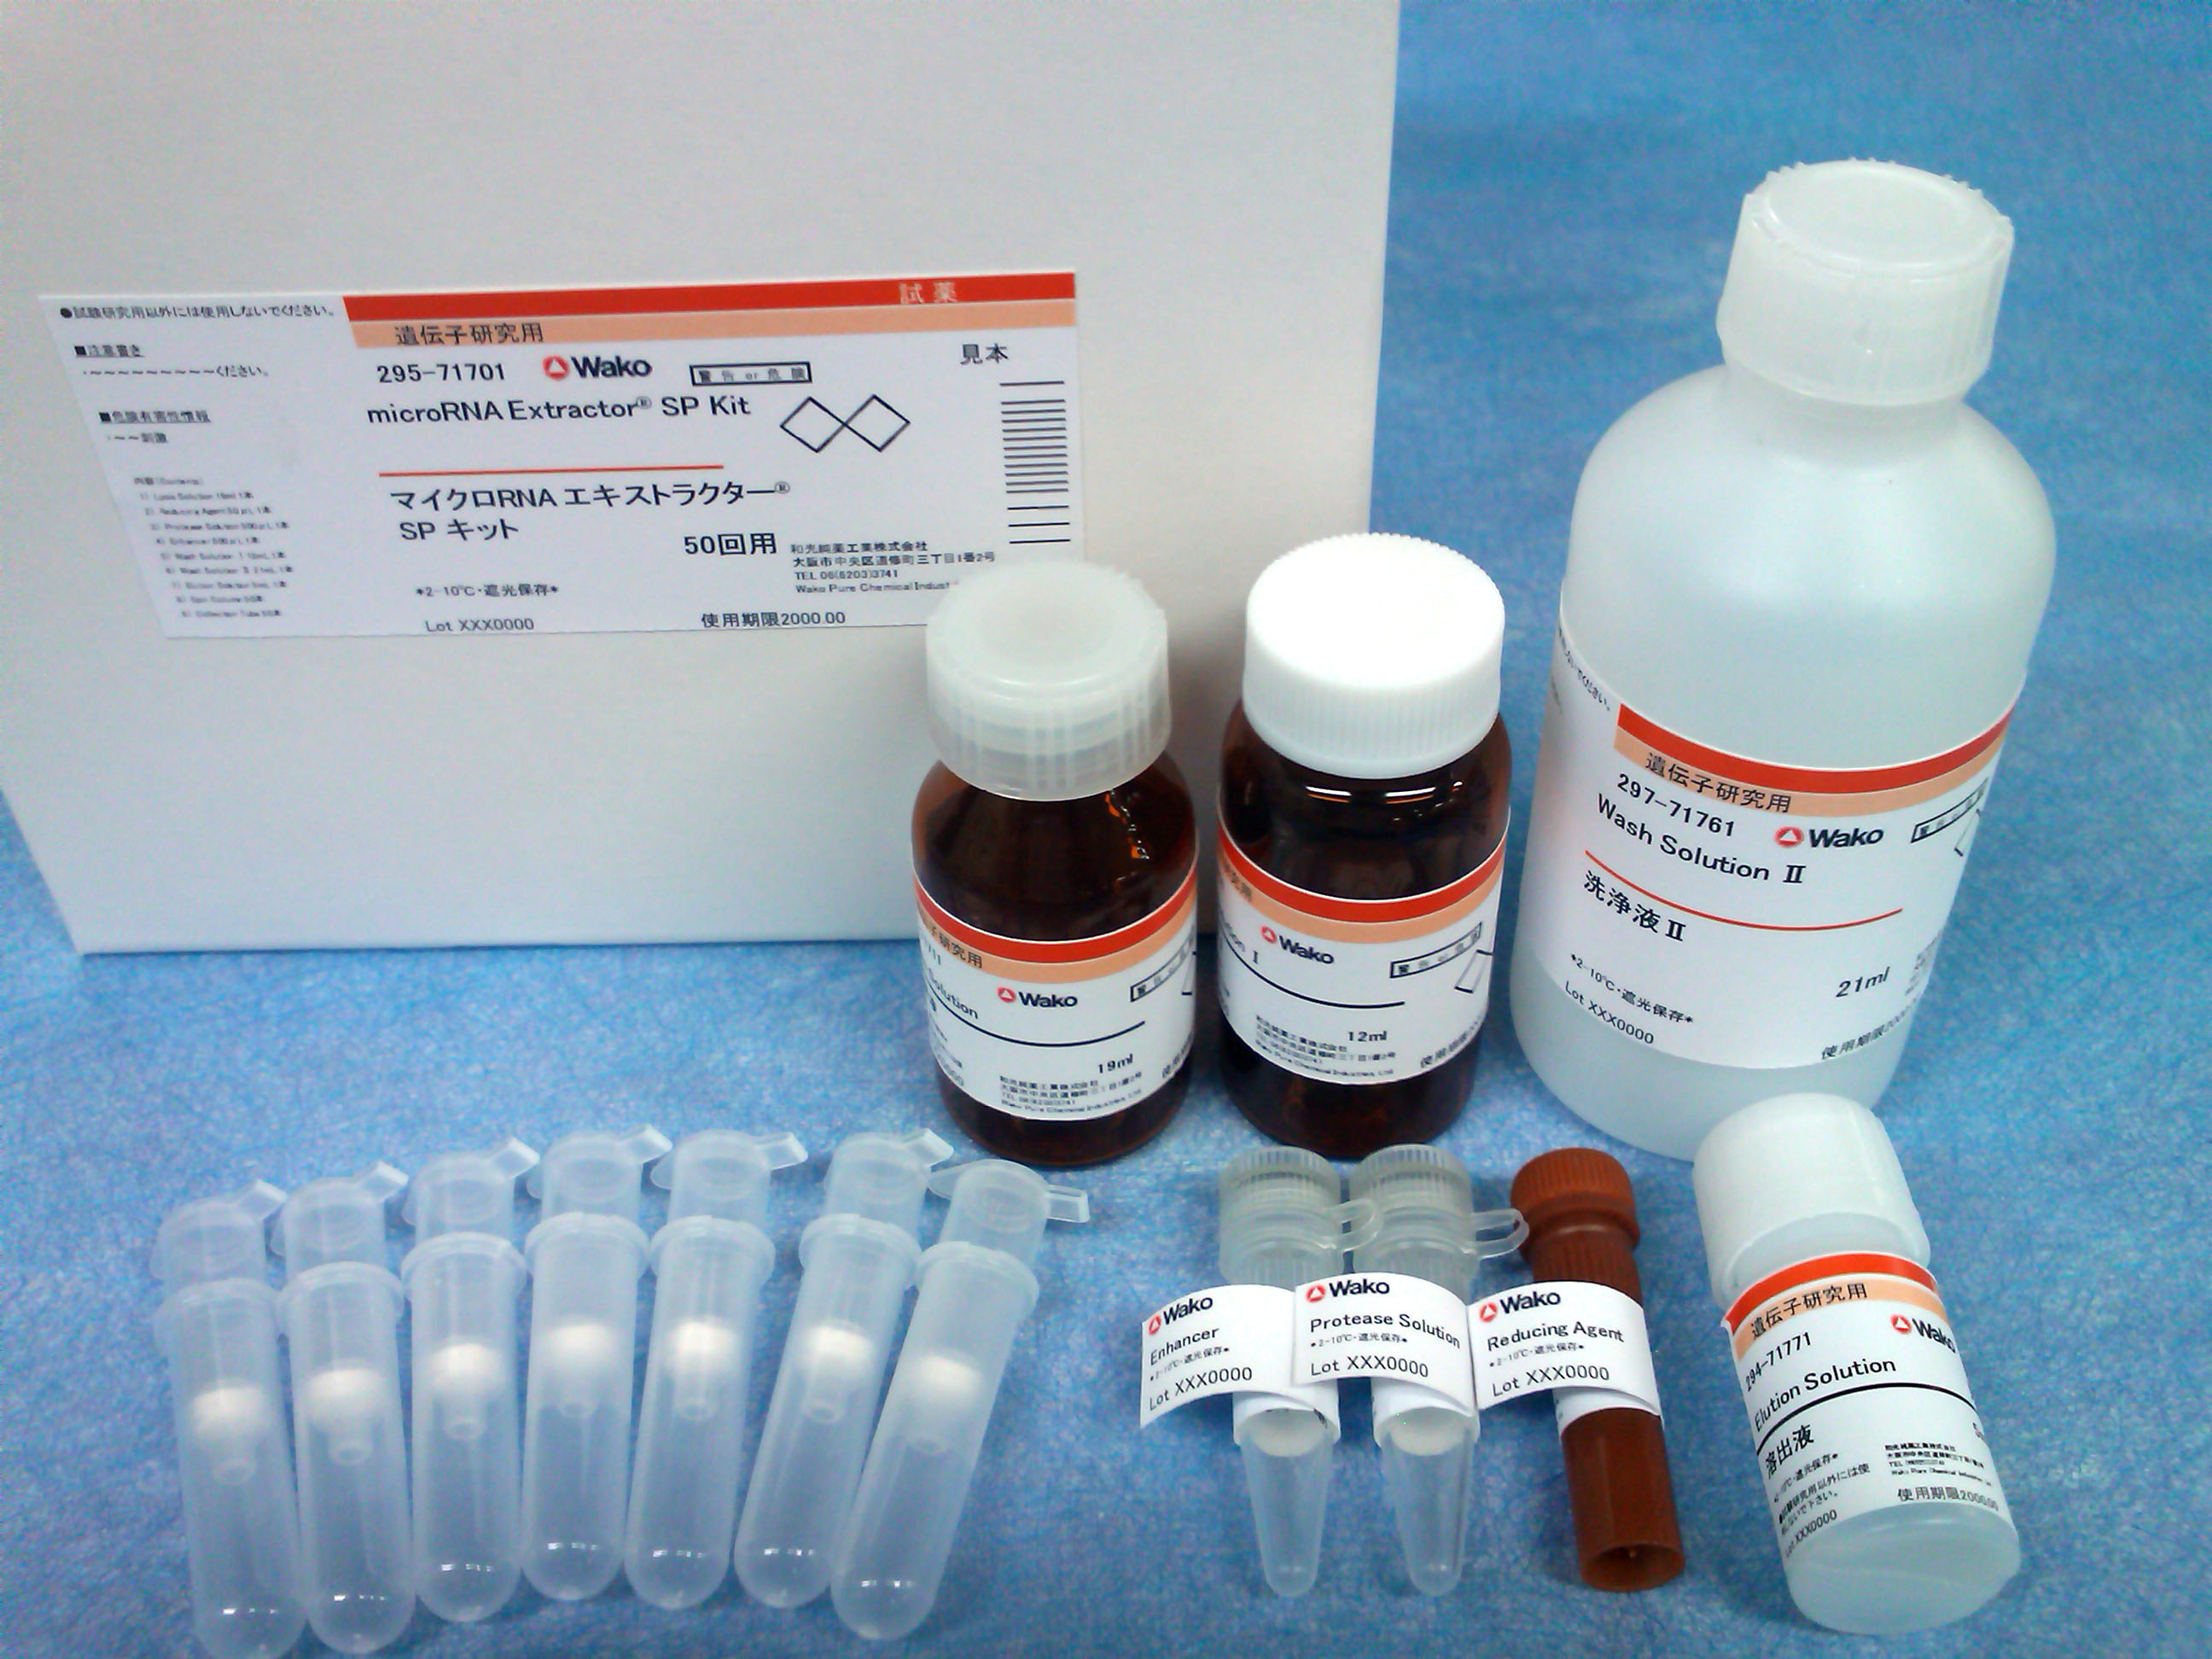 血清•血浆（Serum•Plasma）microRNA提取试剂盒                              microRNA Extractor(R) SP Kit